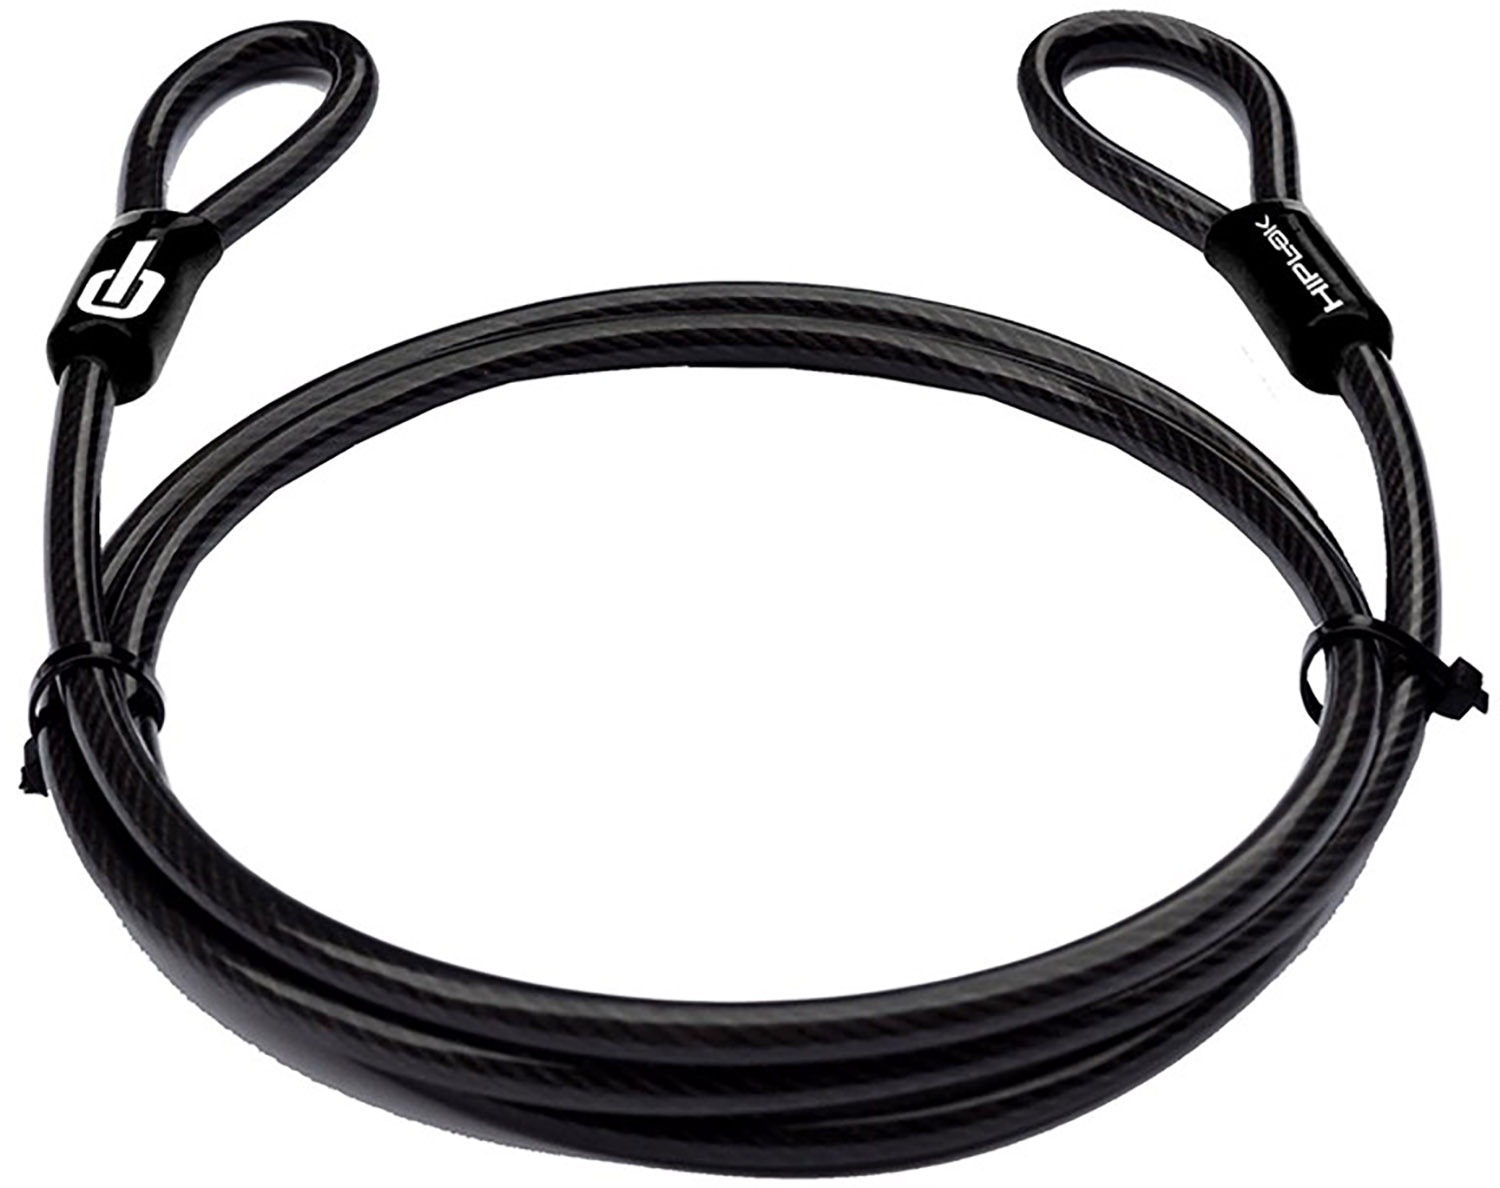 Tilbehør - Cykellås - HIPLOK 2 meter låse kabel - double loop